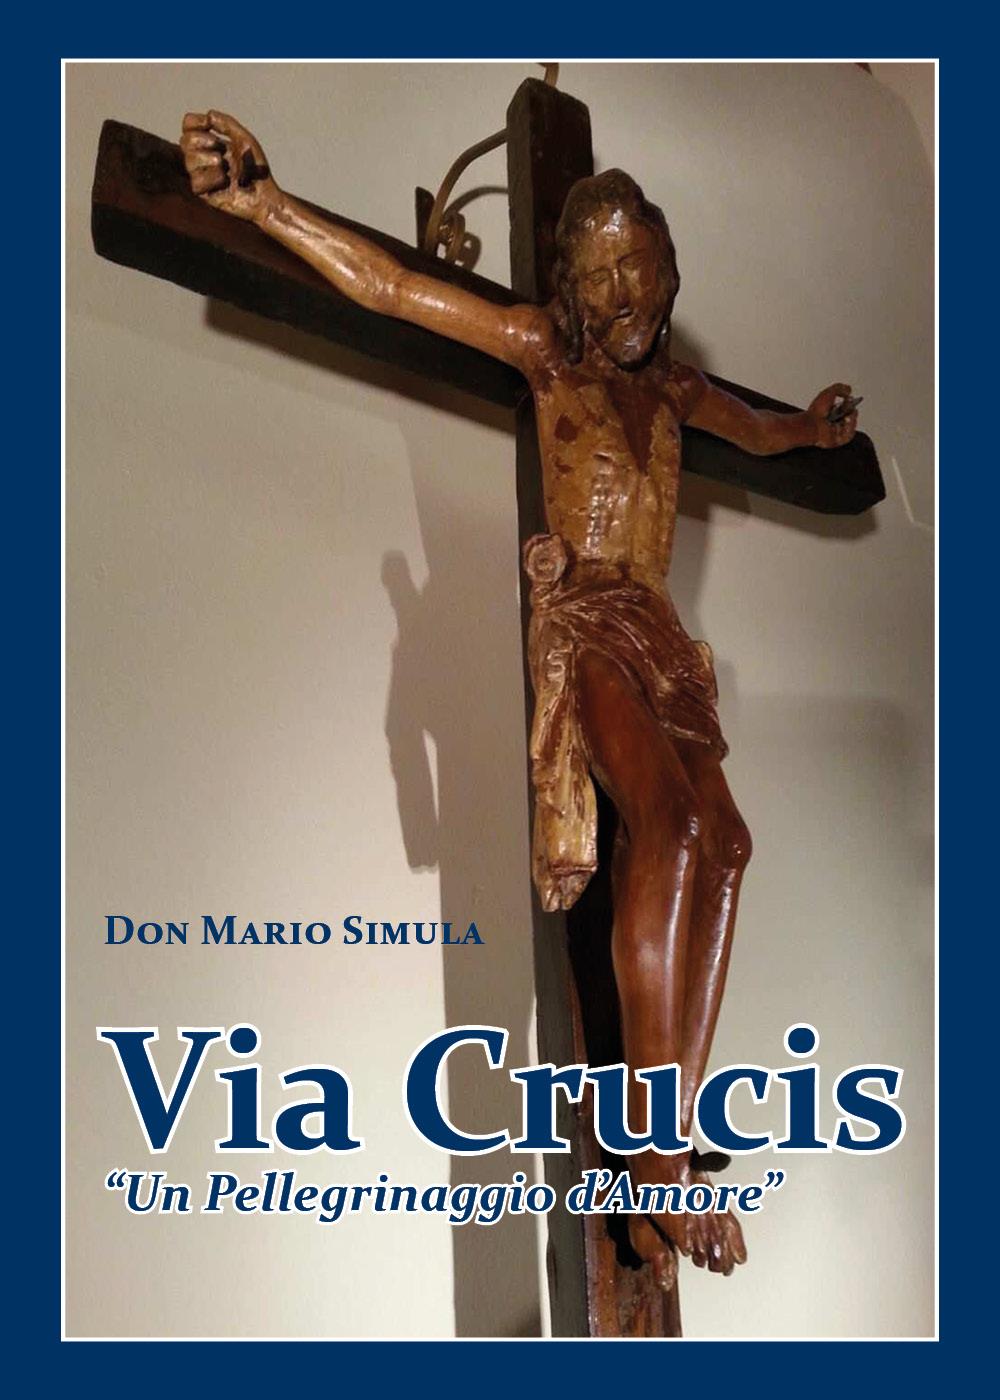 Via Crucis "Un Pellegrinaggio d'Amore"